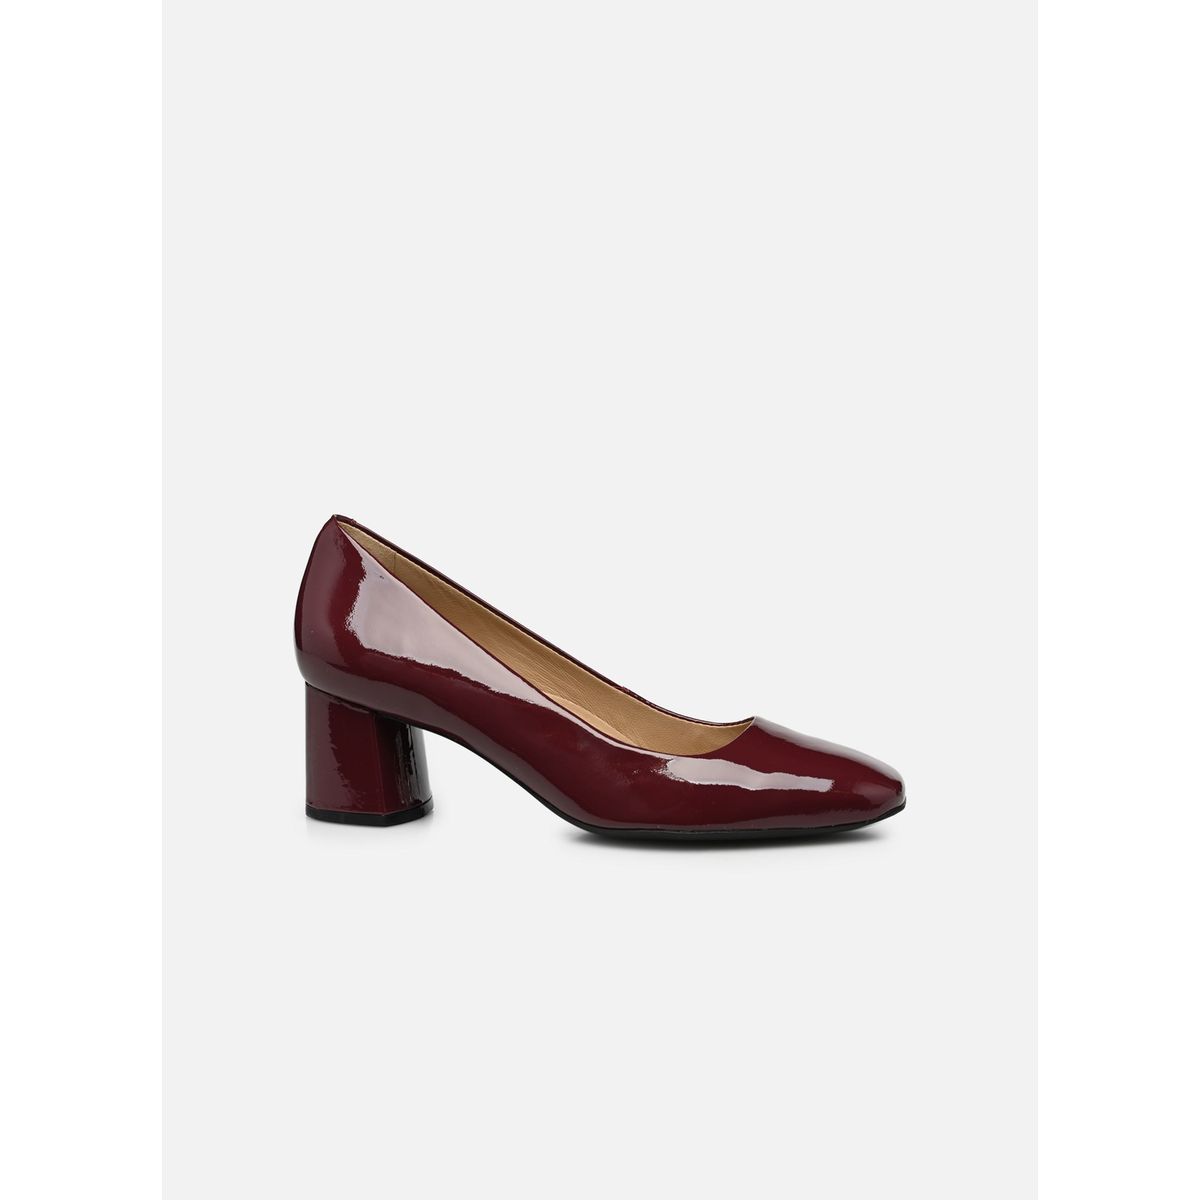 Chaussures Chaussures femme Escarpins Escarpins rouge Taille:35 1950 